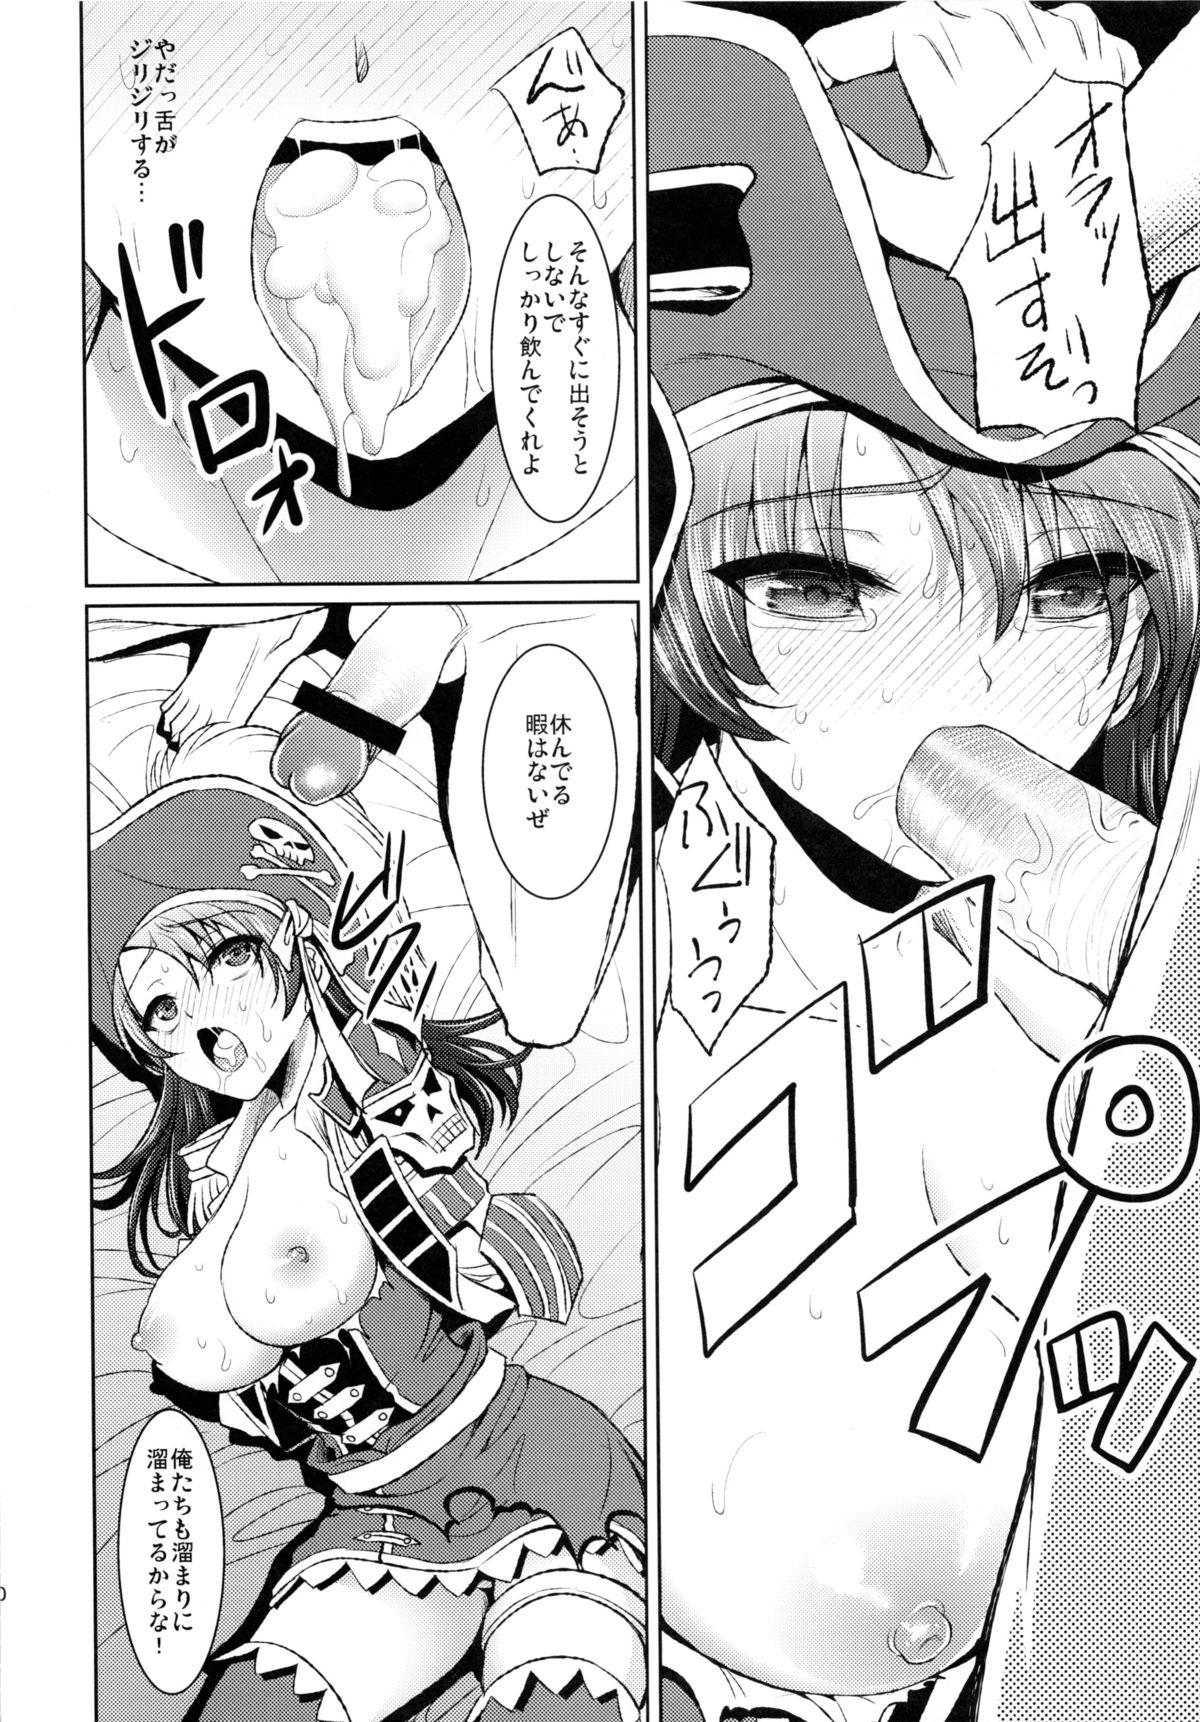 Rola Kaizoku Musume no Gosan - Monster hunter Siririca - Page 9